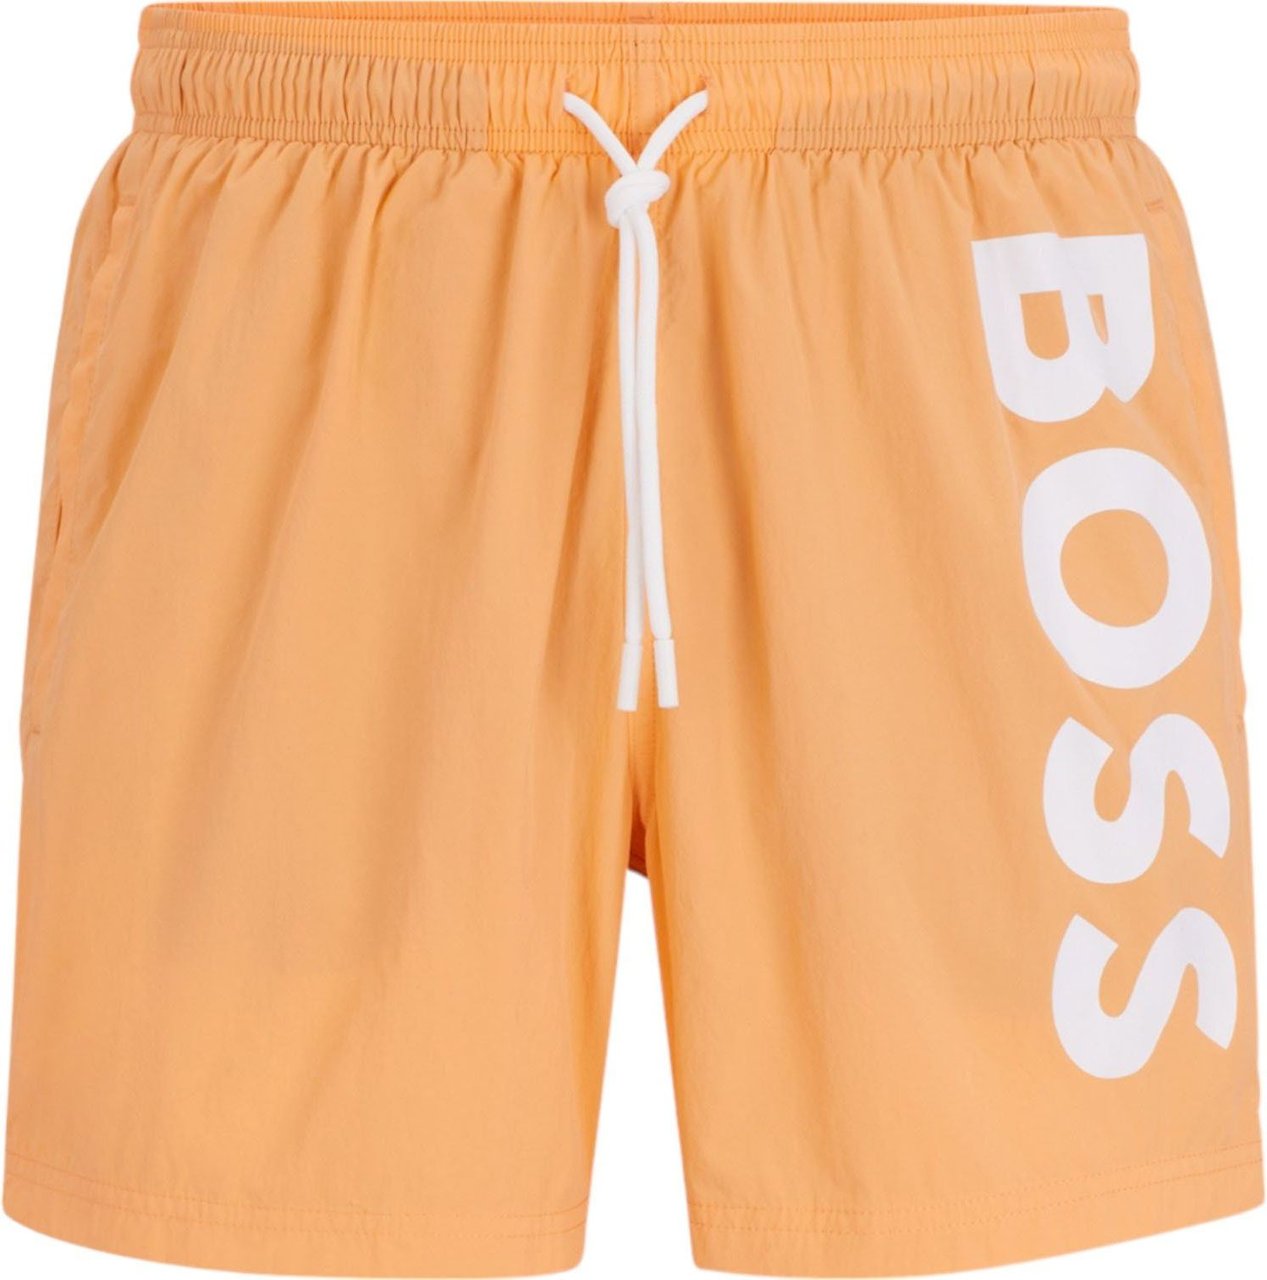 Hugo Boss Boss Heren Korte Broek Oranje 50515296/813 OCTOPUS Oranje